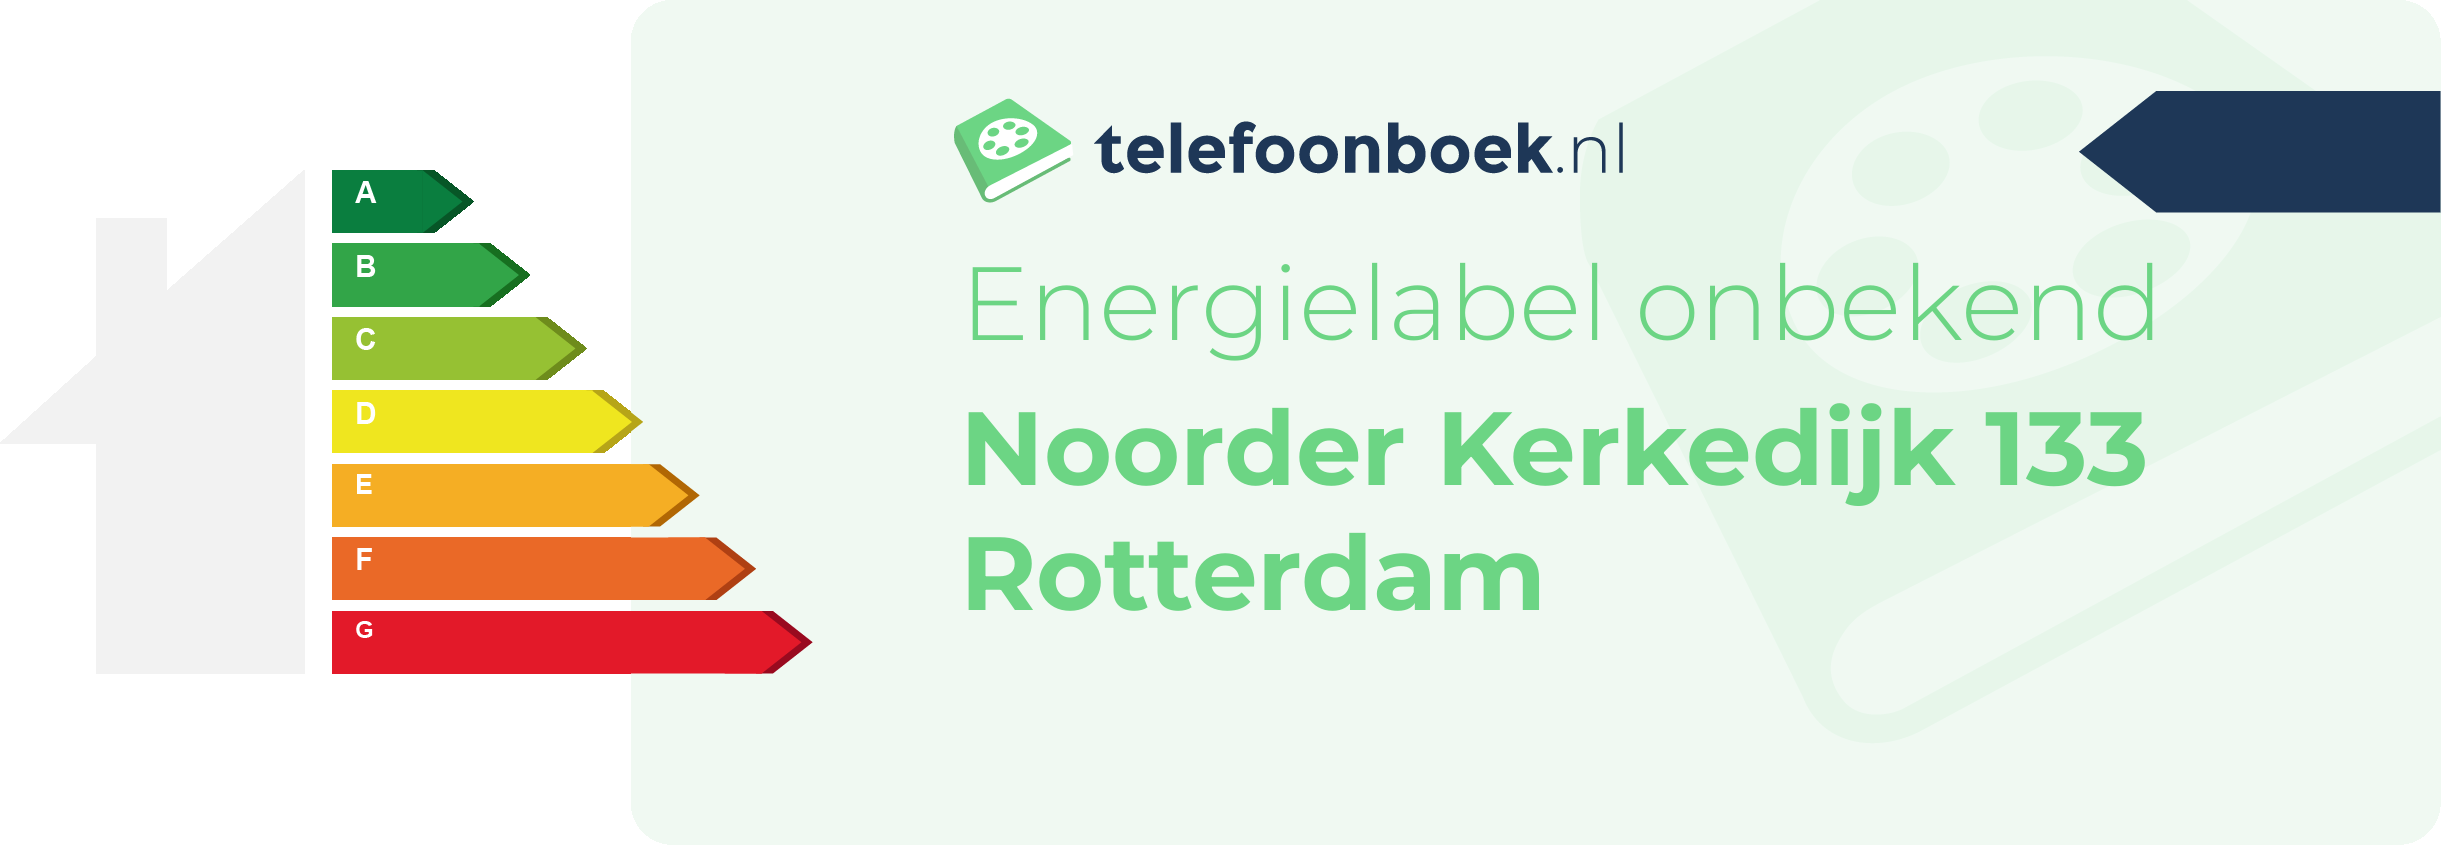 Energielabel Noorder Kerkedijk 133 Rotterdam